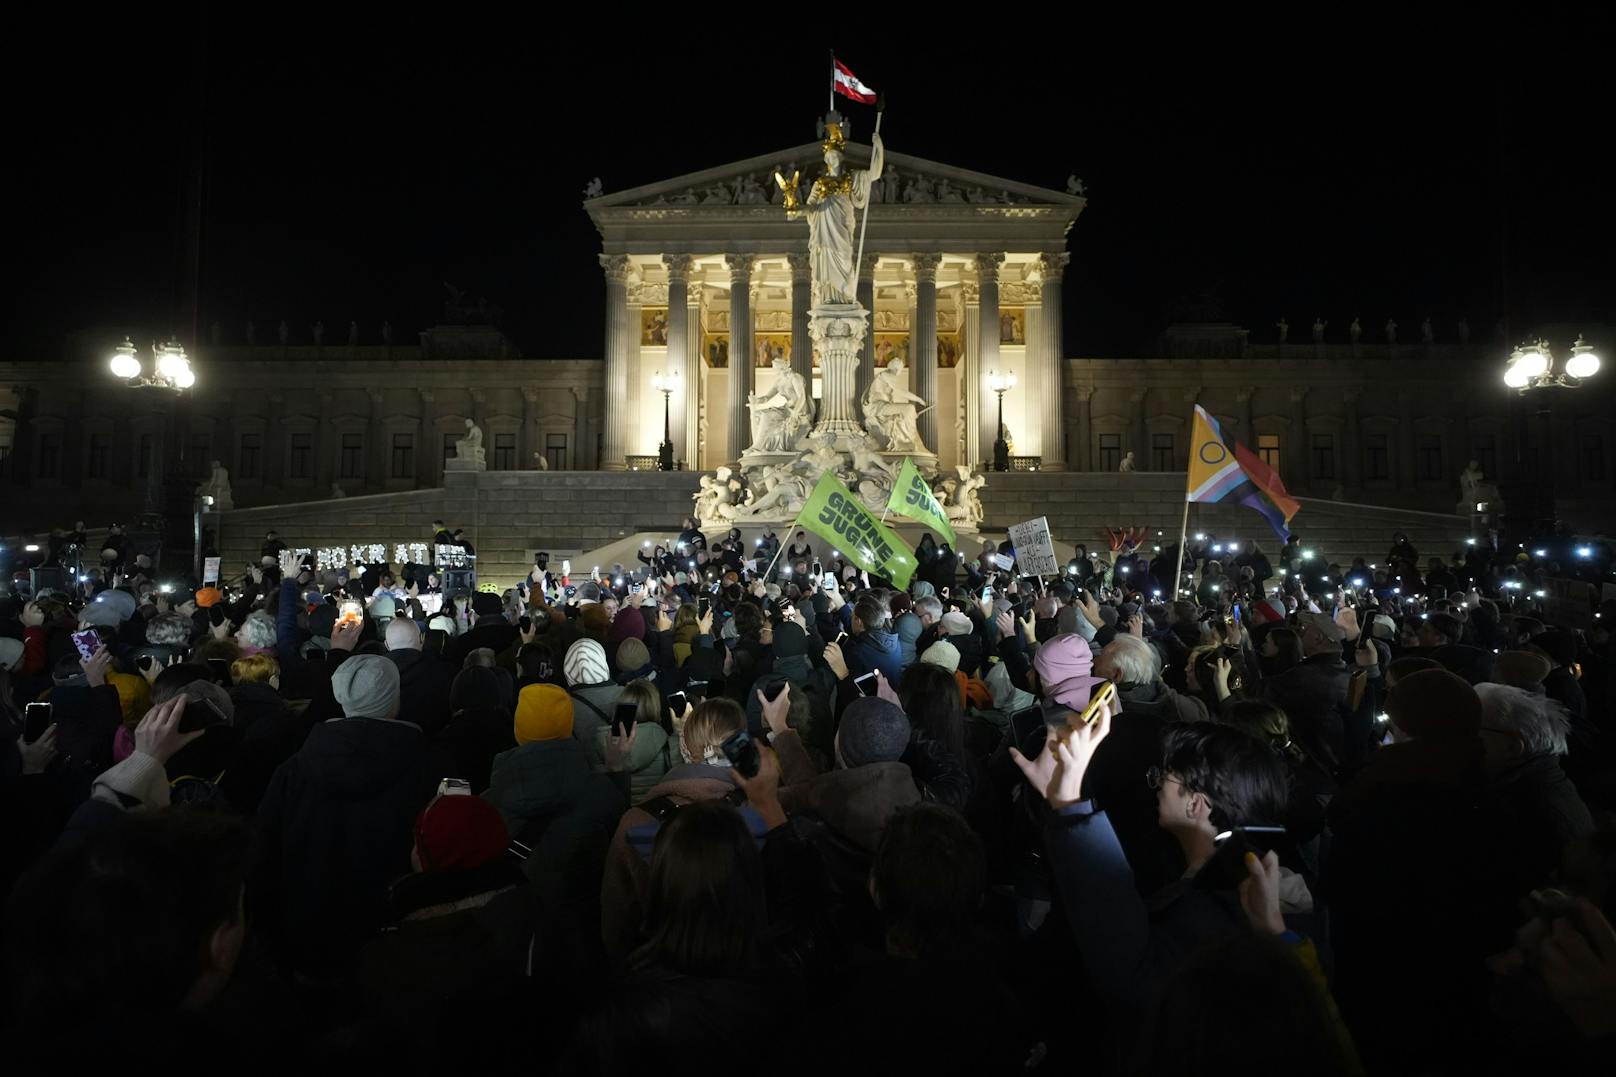 Erneut sind Tausende Menschen in Österreich unter dem Motto "Demokratie verteidigen" am Sonntag gegen Rechtsextremismus auf die Straße gegangen.